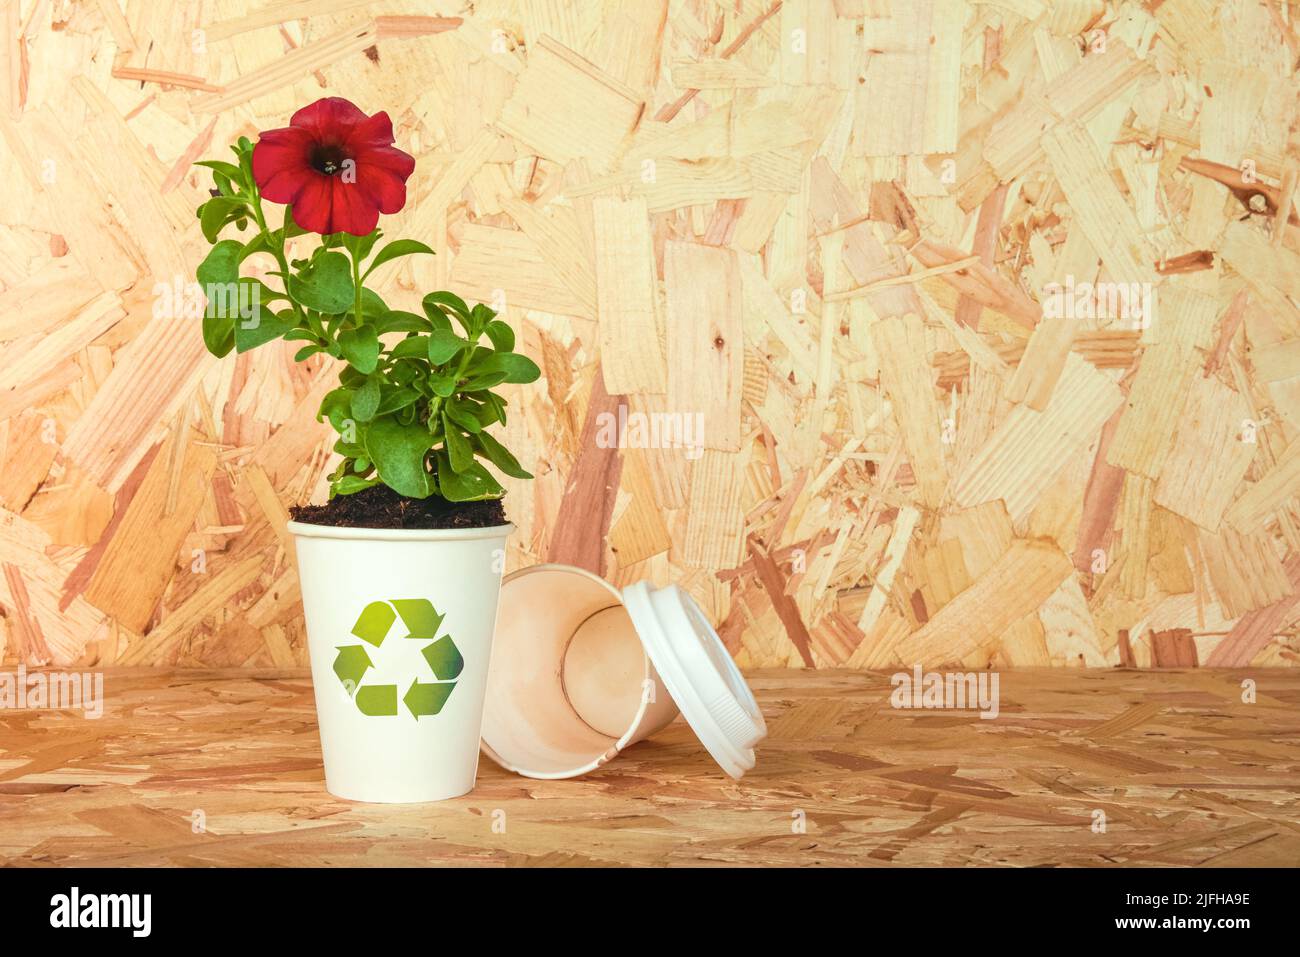 Recicle el logotipo en la taza de papel que se está reutilizando como una maceta de flores como concepto para la sostenibilidad y la conciencia de los problemas ambientales y los recursos naturales Foto de stock